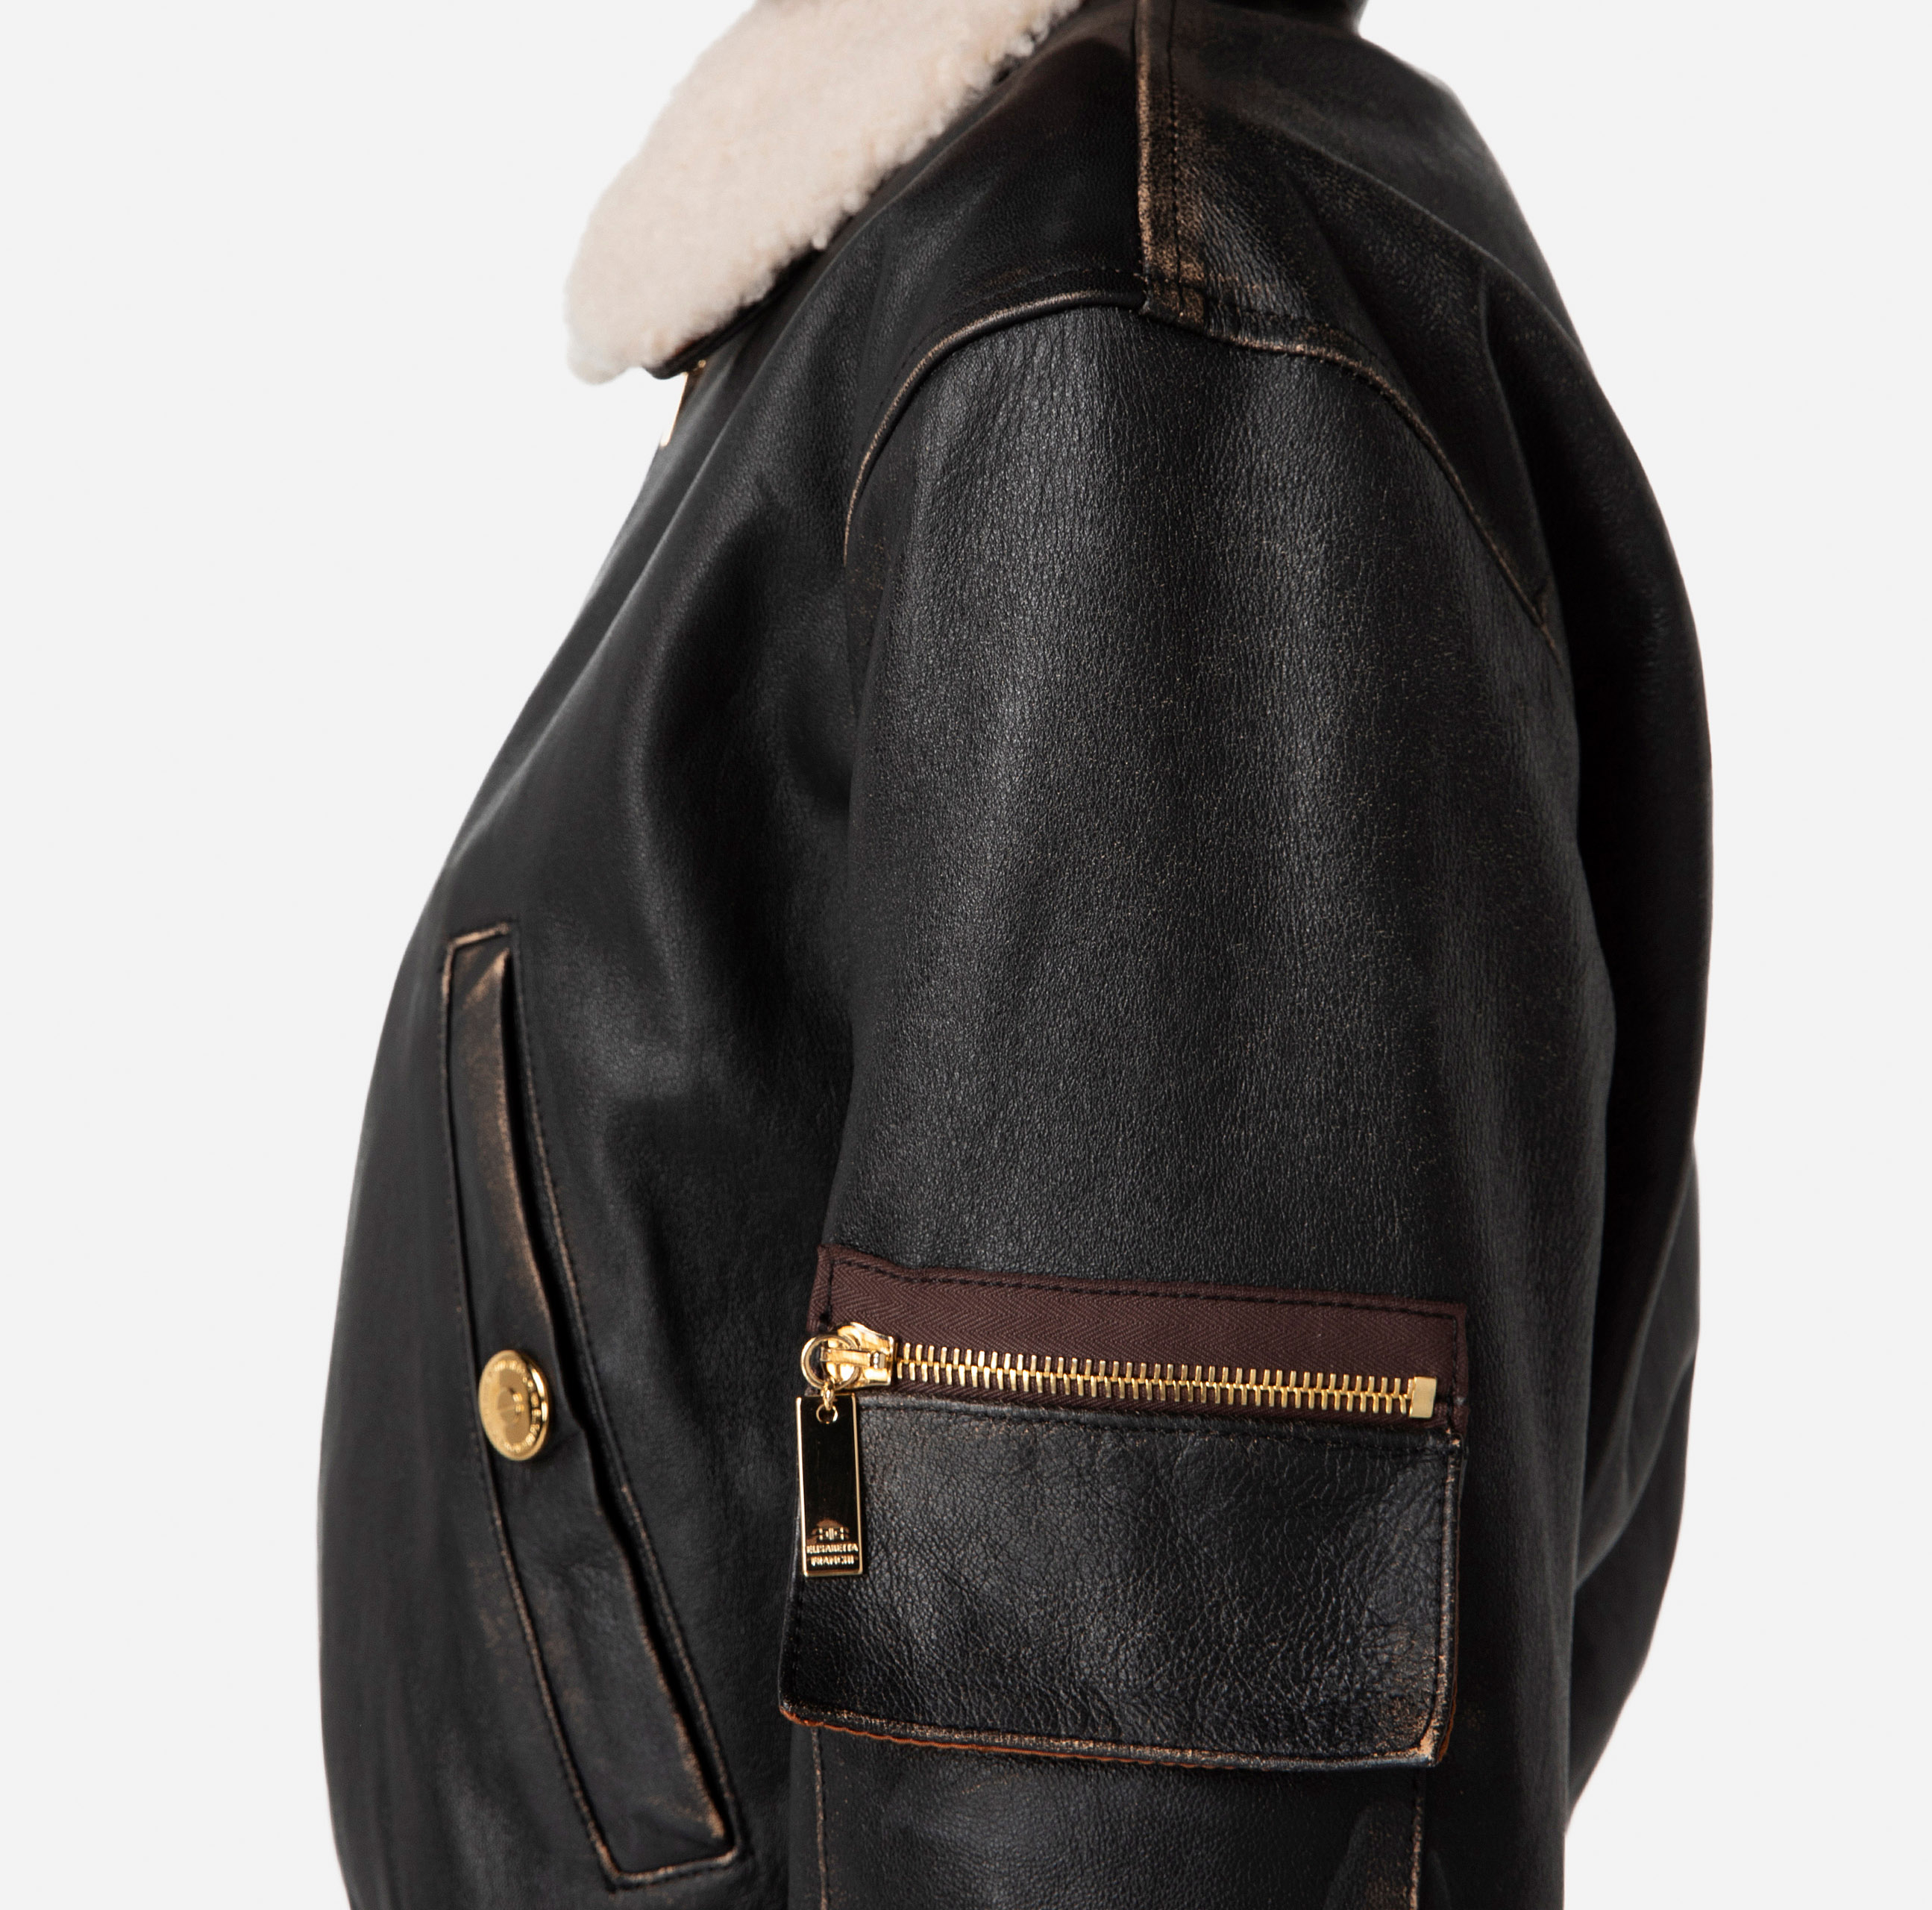 Leather bomber jacket with sheepskin collar - Elisabetta Franchi